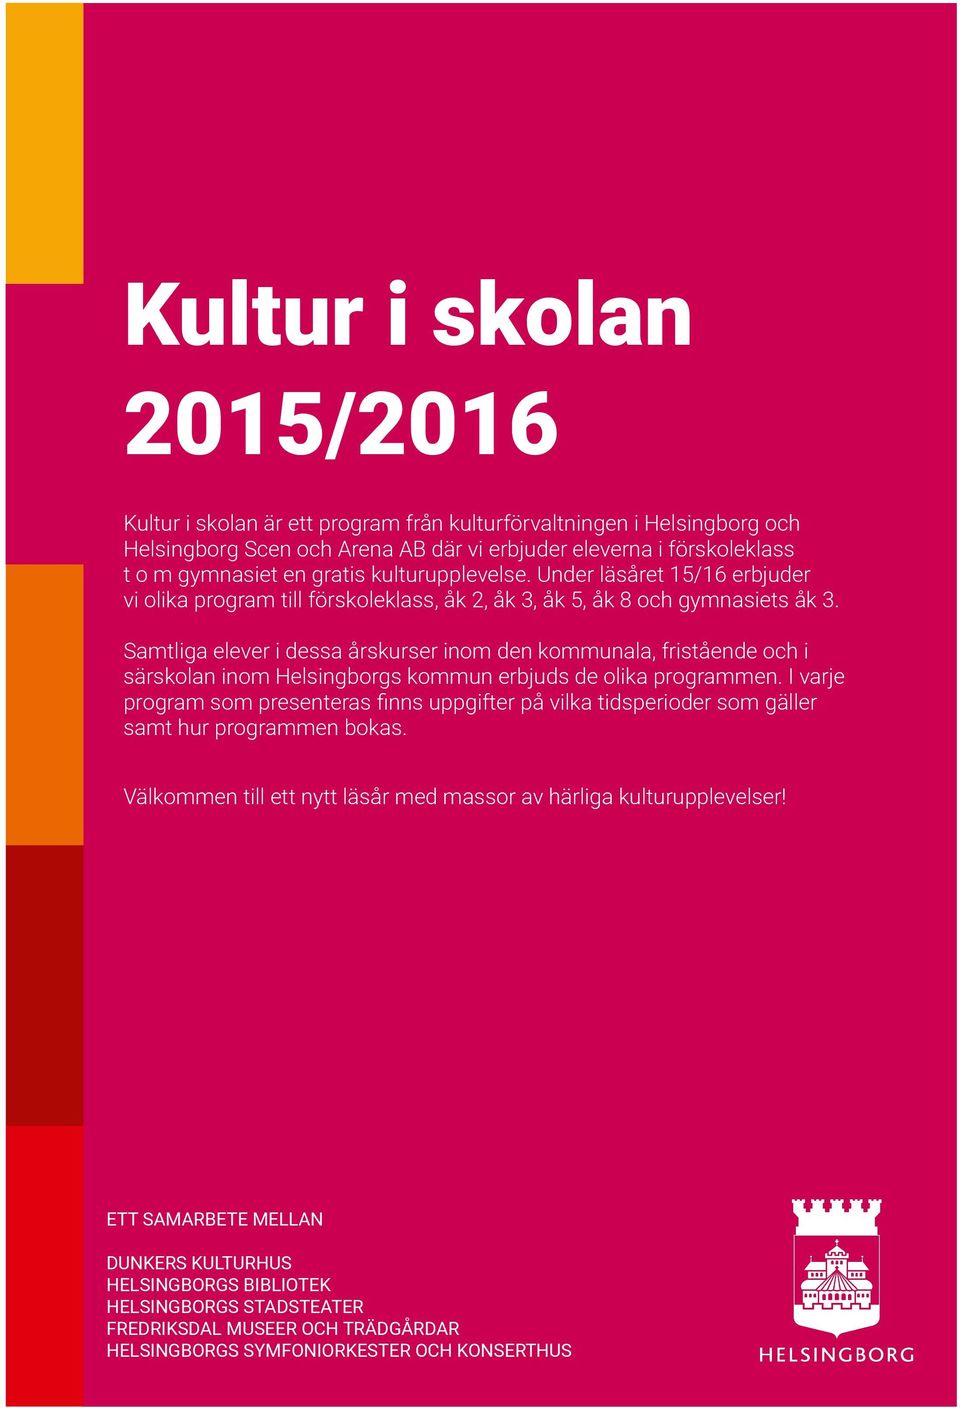 Samtliga elever i dessa årskurser inom den kommunala, fristående och i särskolan inom Helsingborgs kommun erbjuds de olika programmen.